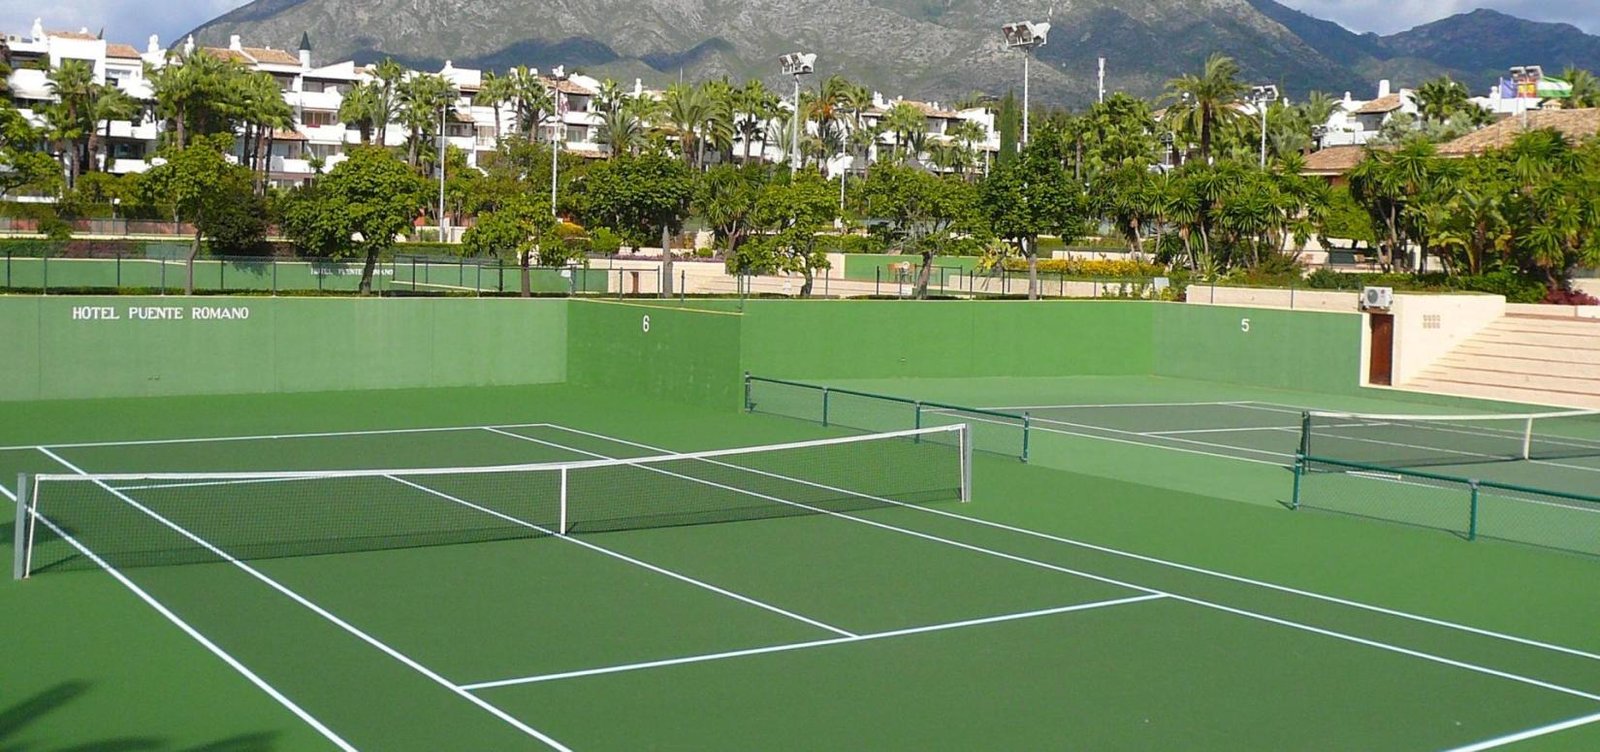 Universal Sport Instalaciones - Puente Romano Tennis Club in Marbella, southern Spain 07